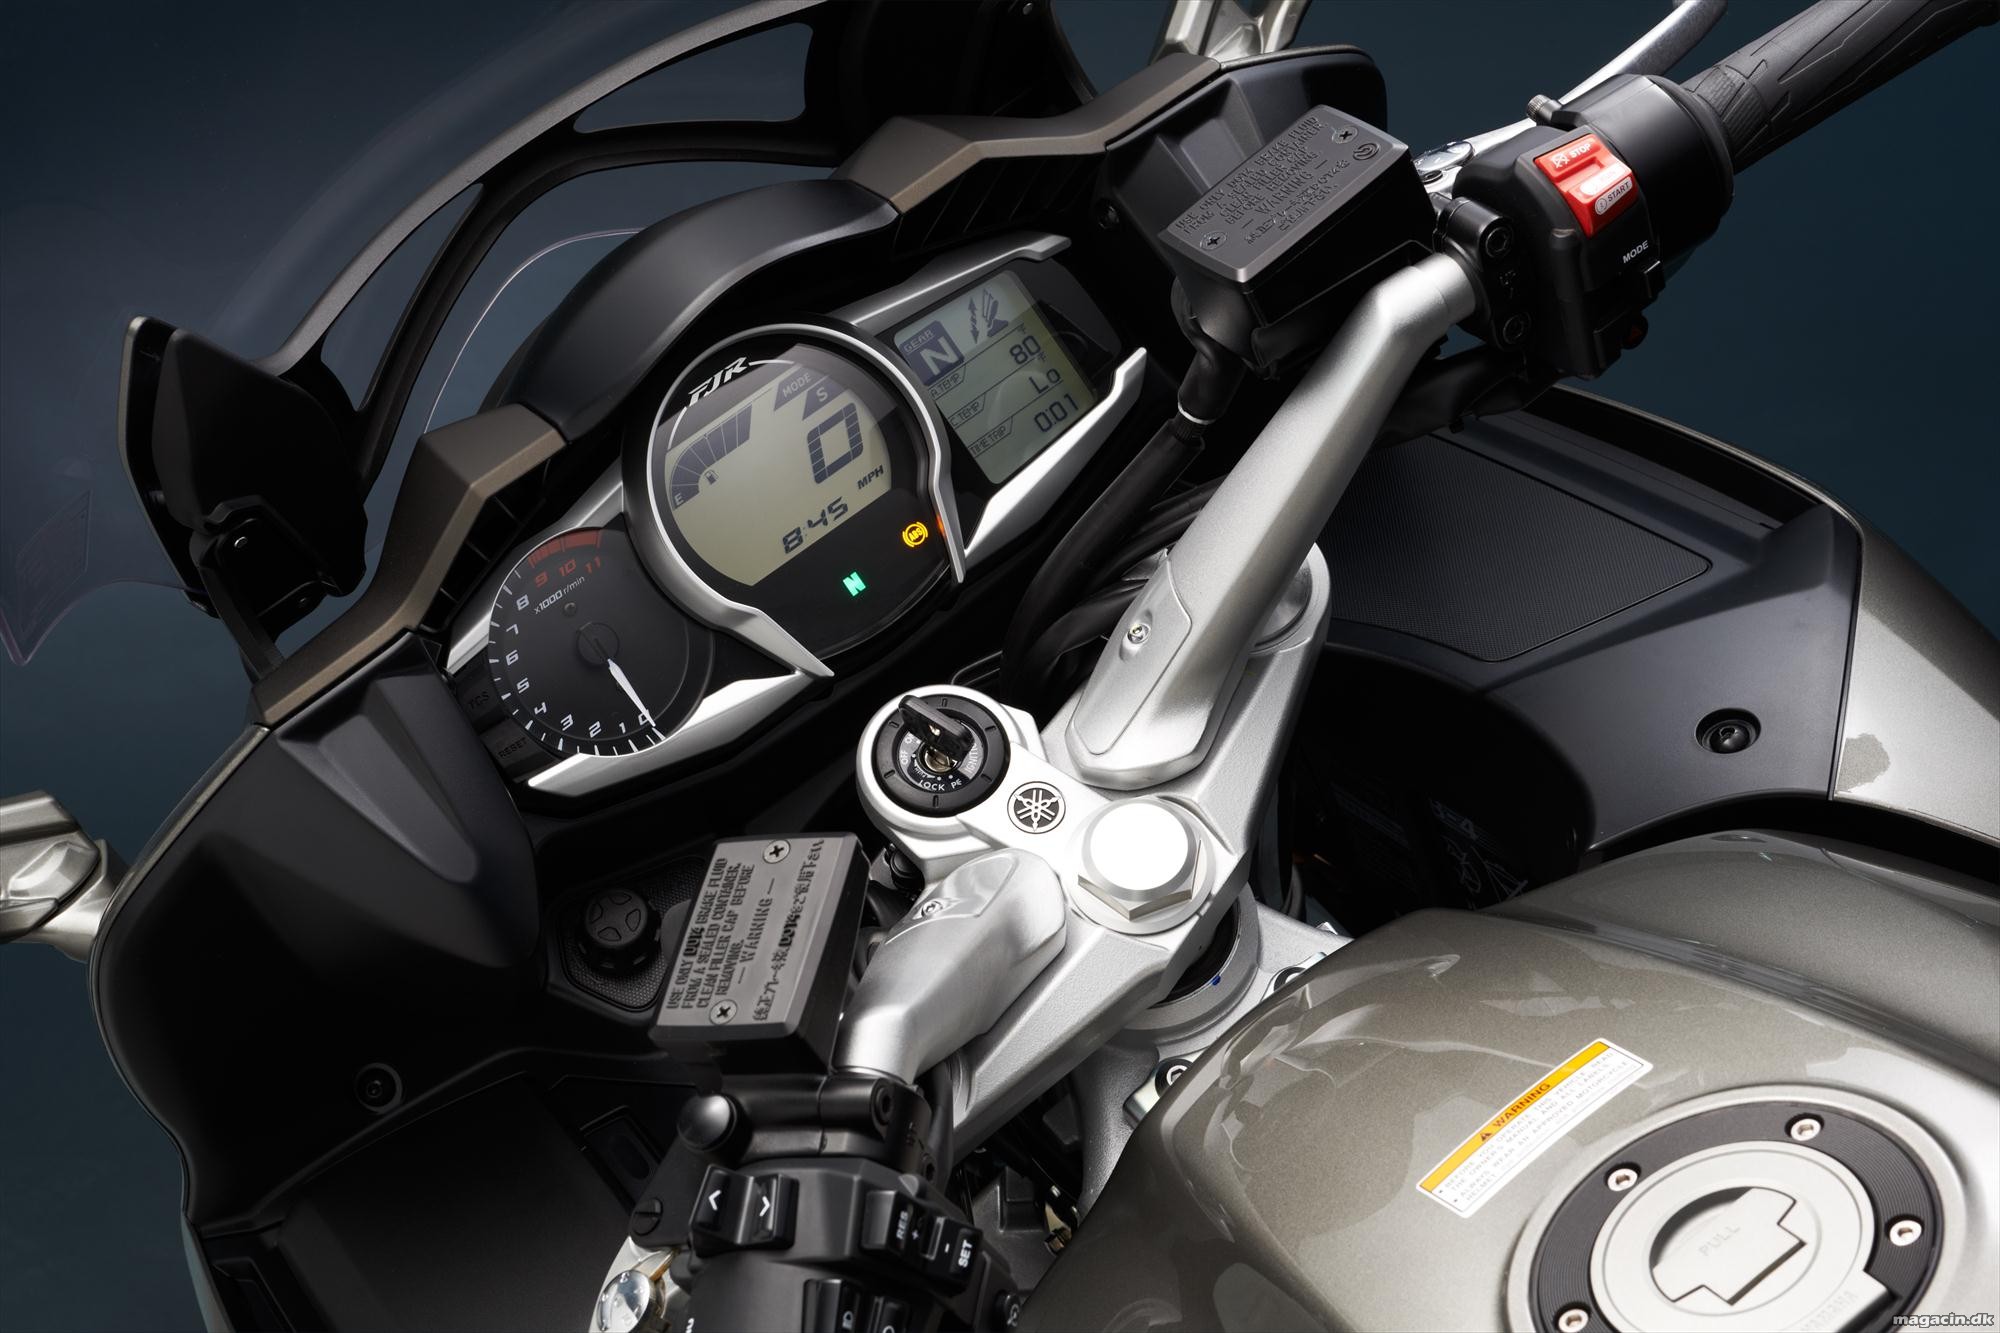 Test: 2014 Yamaha FJR 1300 – Motorcyklen for de touring-tossede